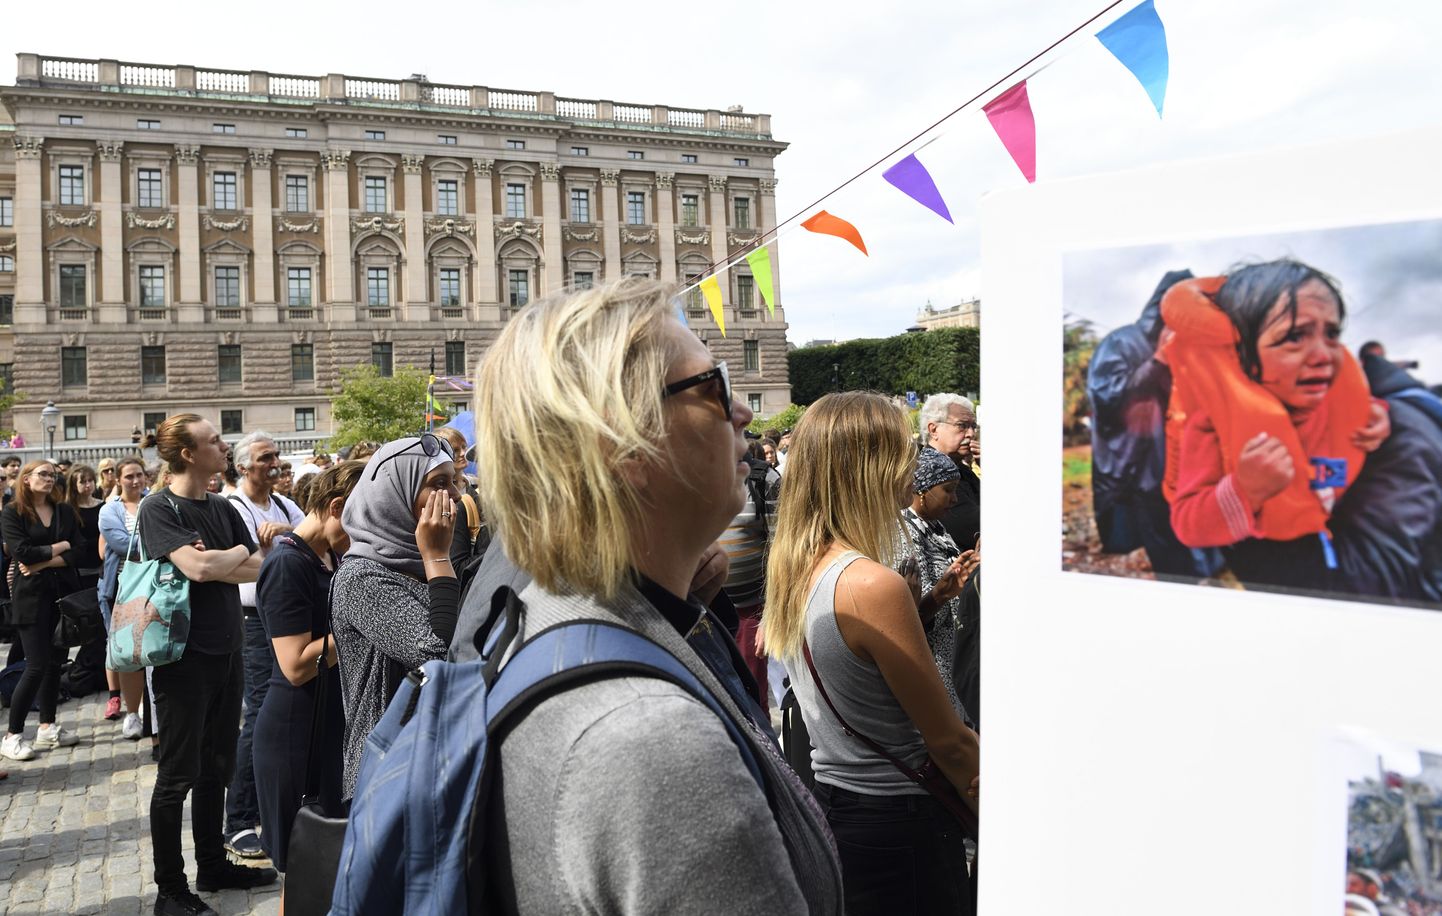 Möödunud suvel kogunesid STockholmi elanikud parlamendi ette, et protestida varjupaigataotlejate perede ühendamise korda karmistava seaduse vastu.